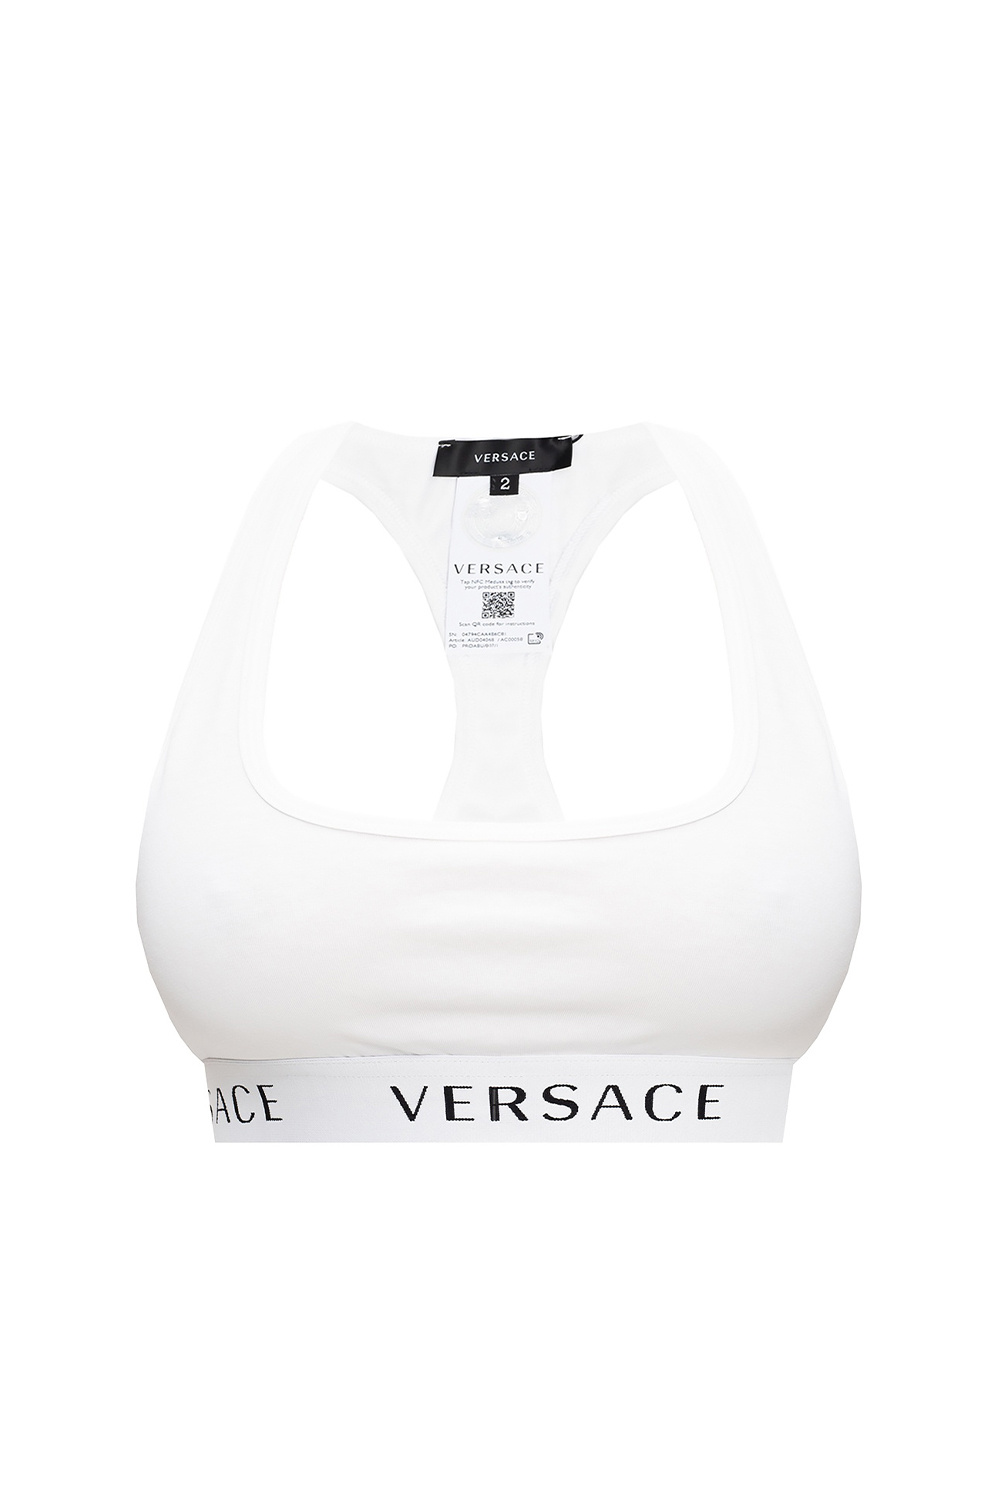 White Branded sports bra Versace - GenesinlifeShops Spain